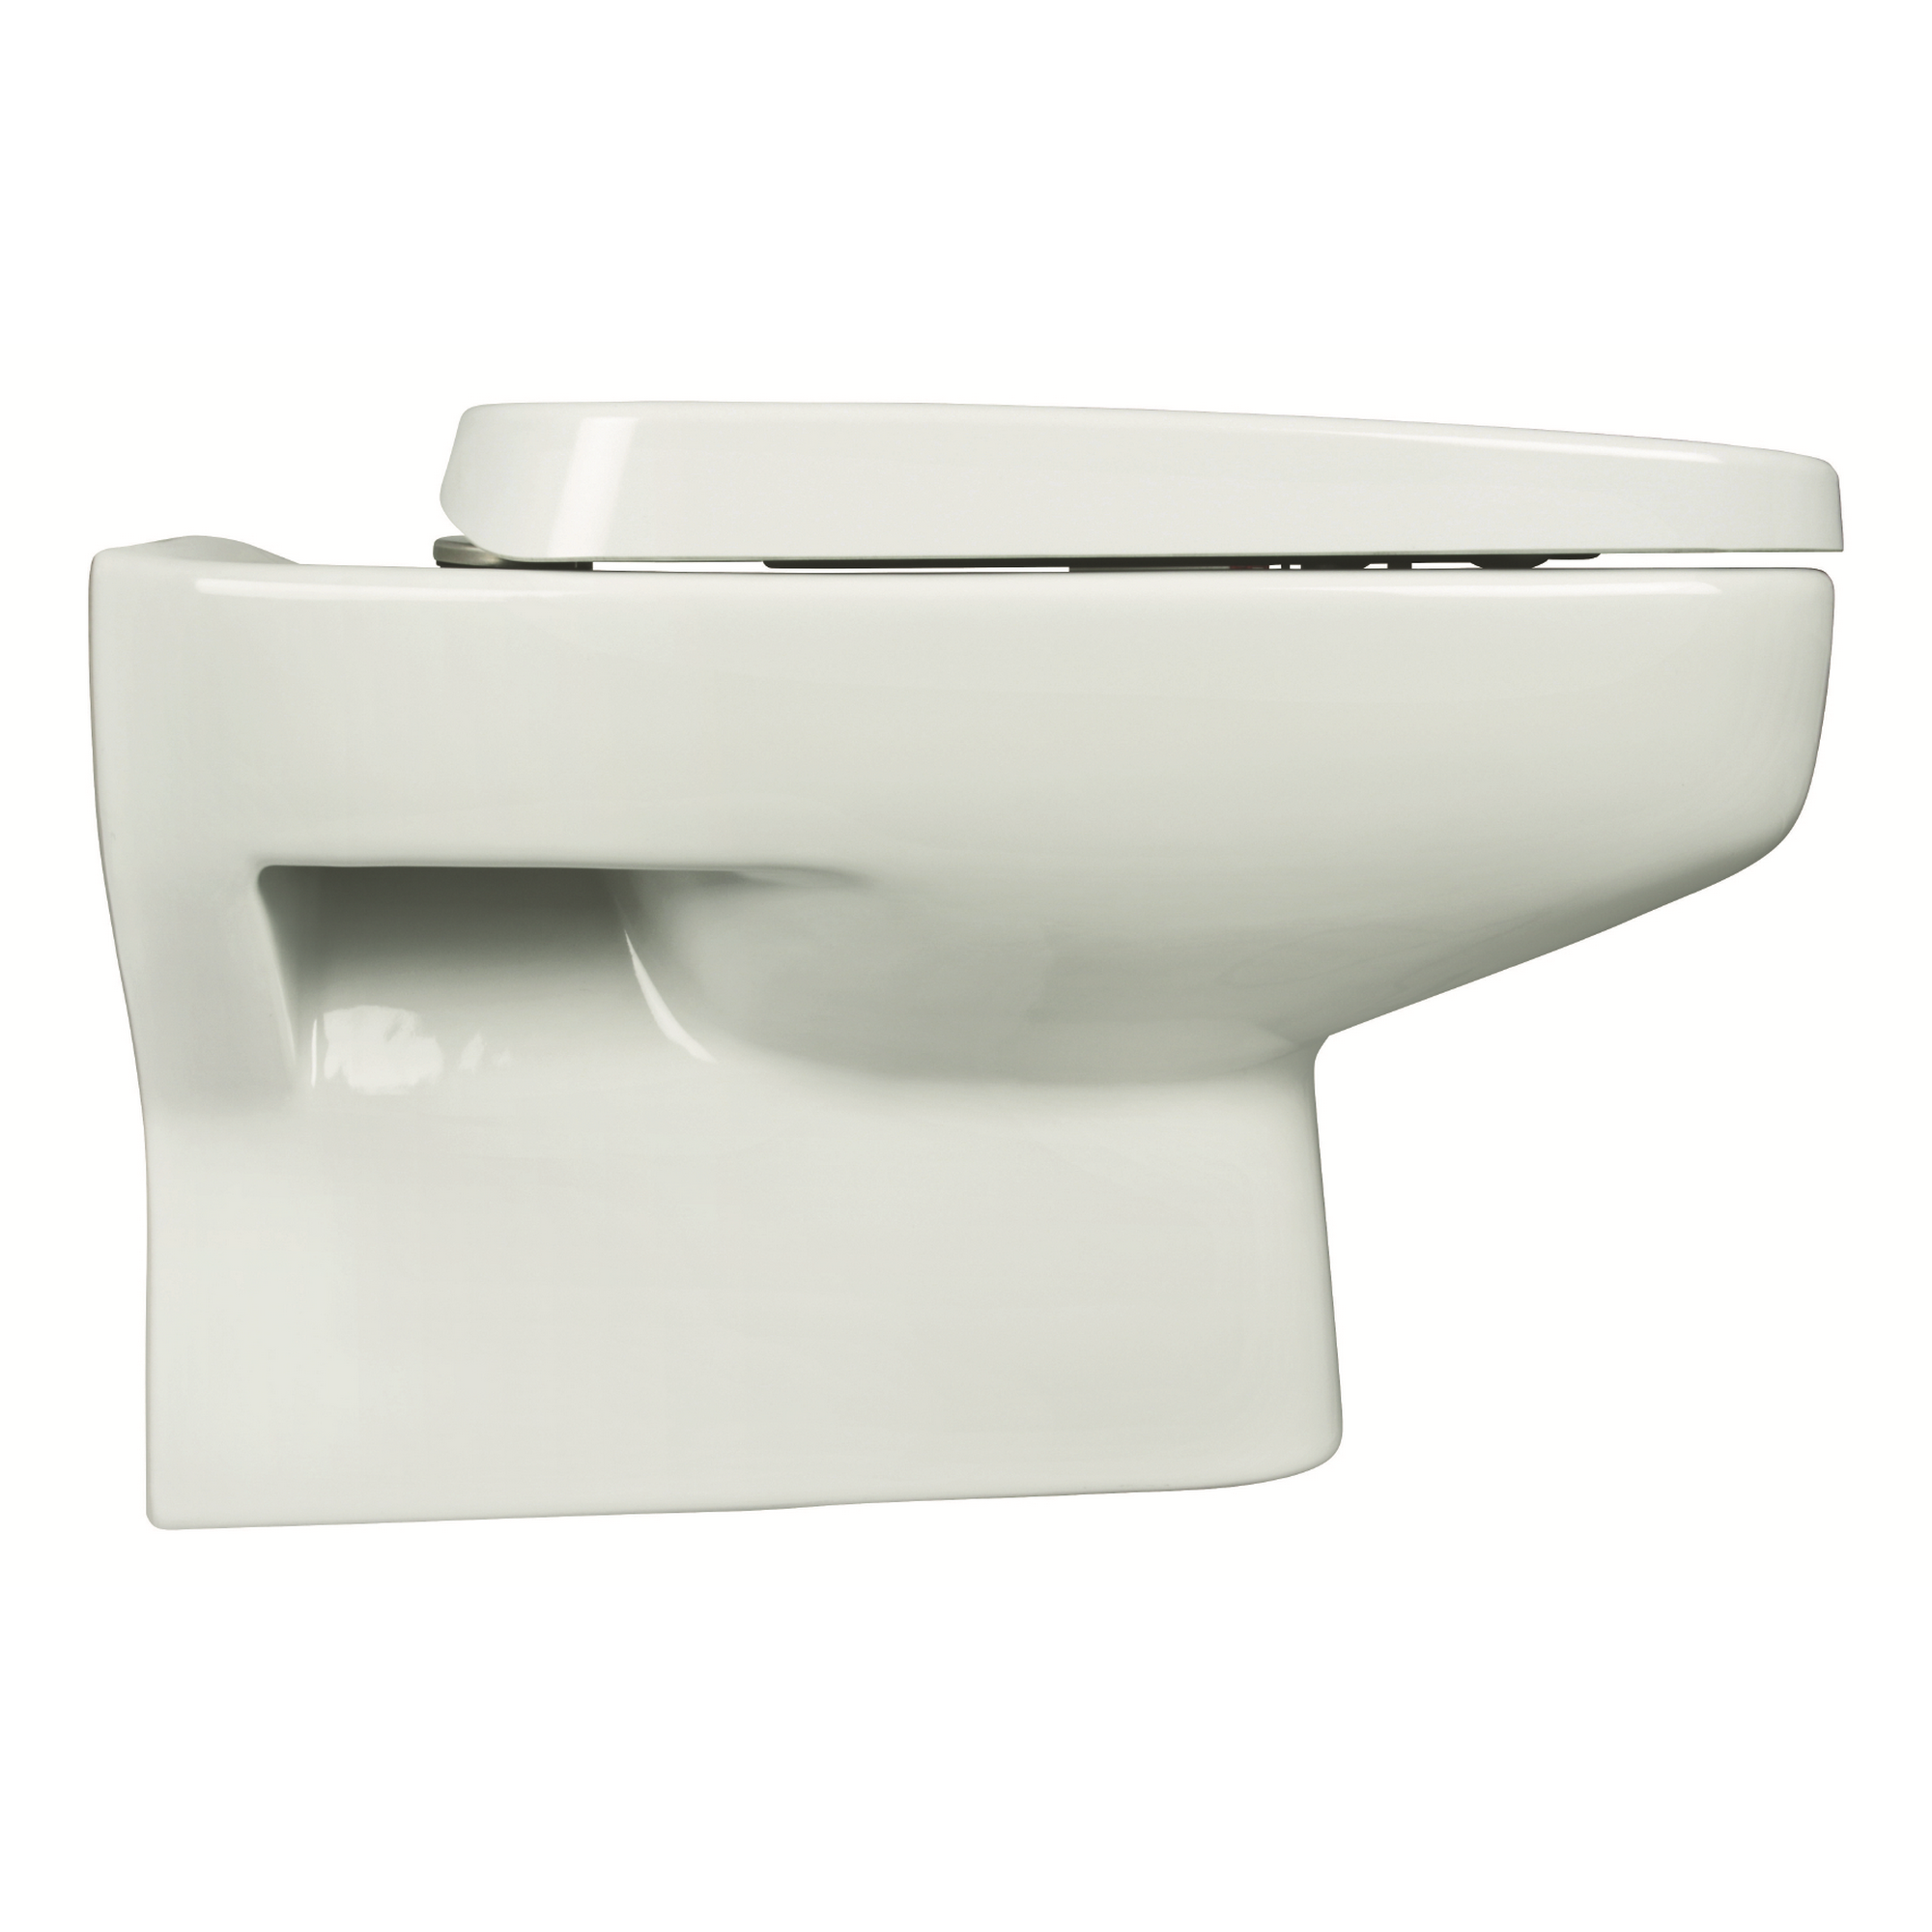 Wand-WC 'Quadra 2.0' Clean Tiefspüler weiß + product picture